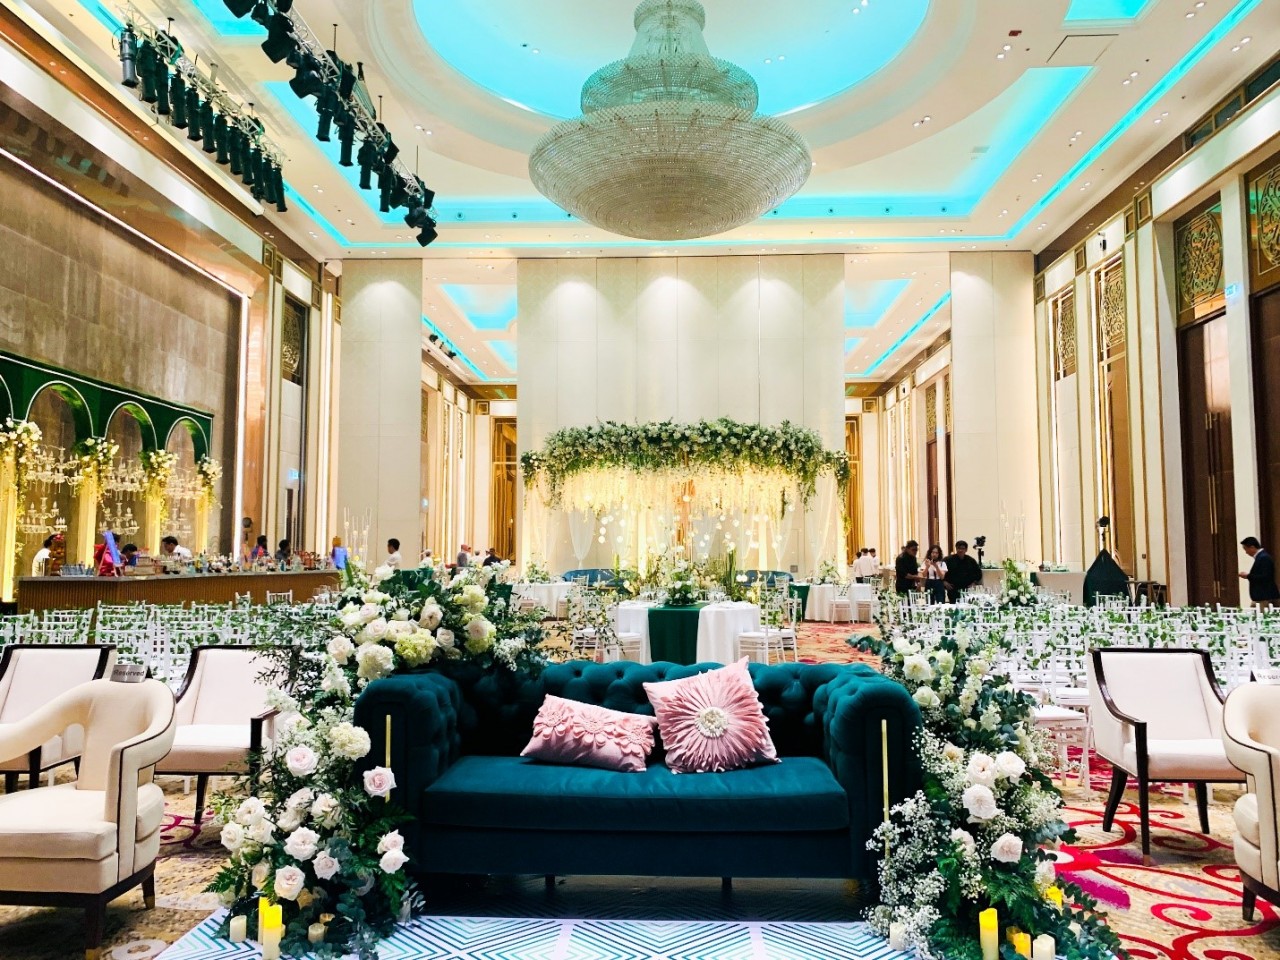 Không gian đại sảnh Grand Ballroom nơi tổ chức nghi lễ Sangeet của cô dâu và chú rể.